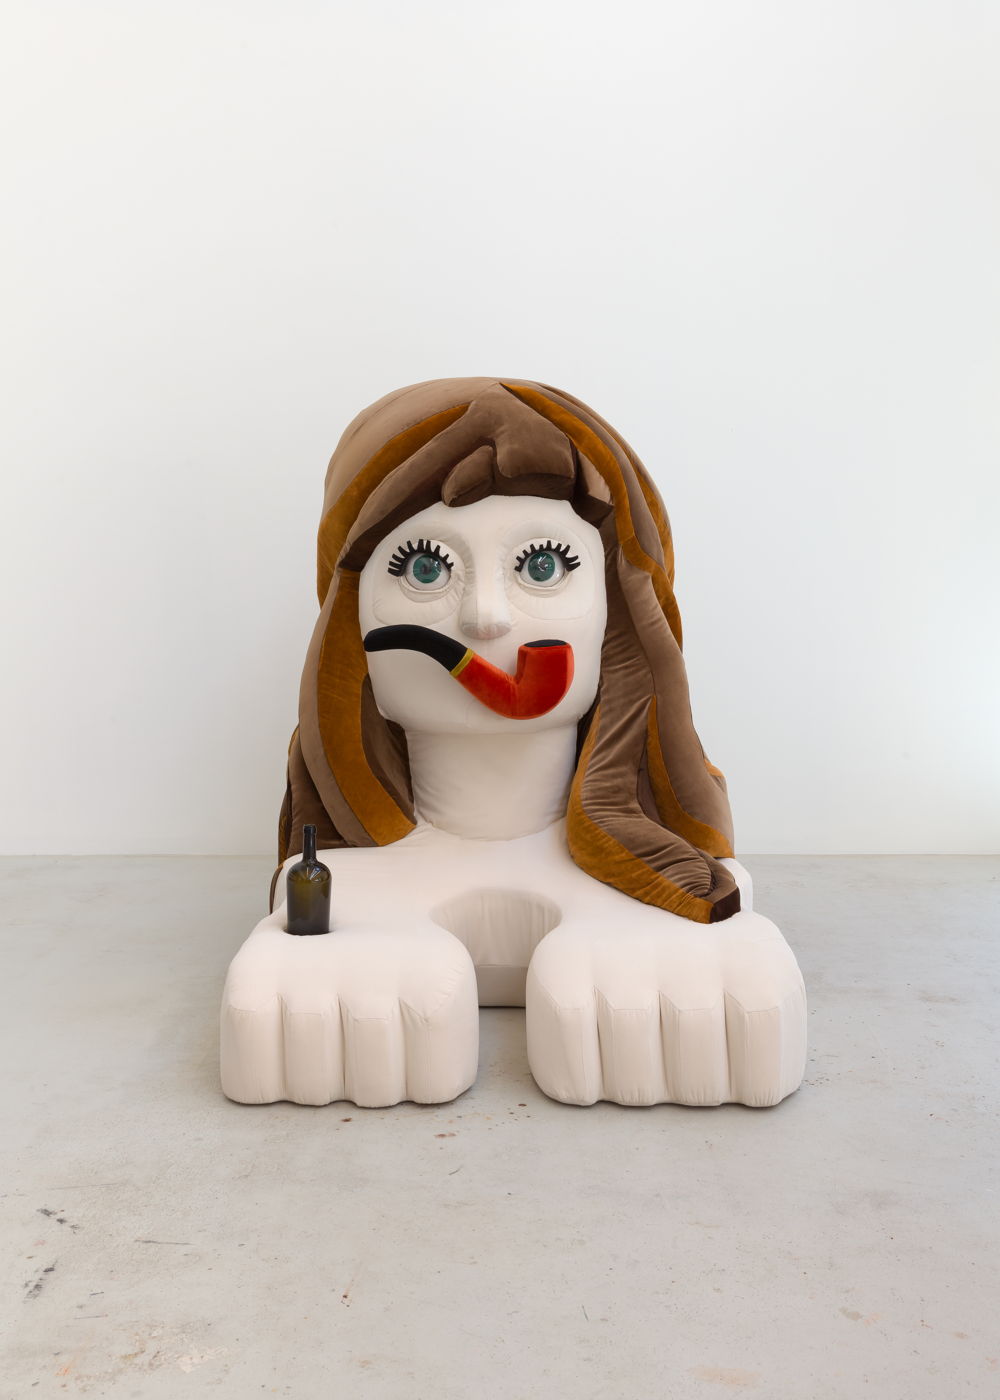 KATI HECK, Hecksphinx (Ein Selbst in der Warteschlange), 2020. Styrofoam, fabric, plastic, cup 185 x 140 x 205 cm. Courtesy Tim Van Laere Gallery, Antwerp